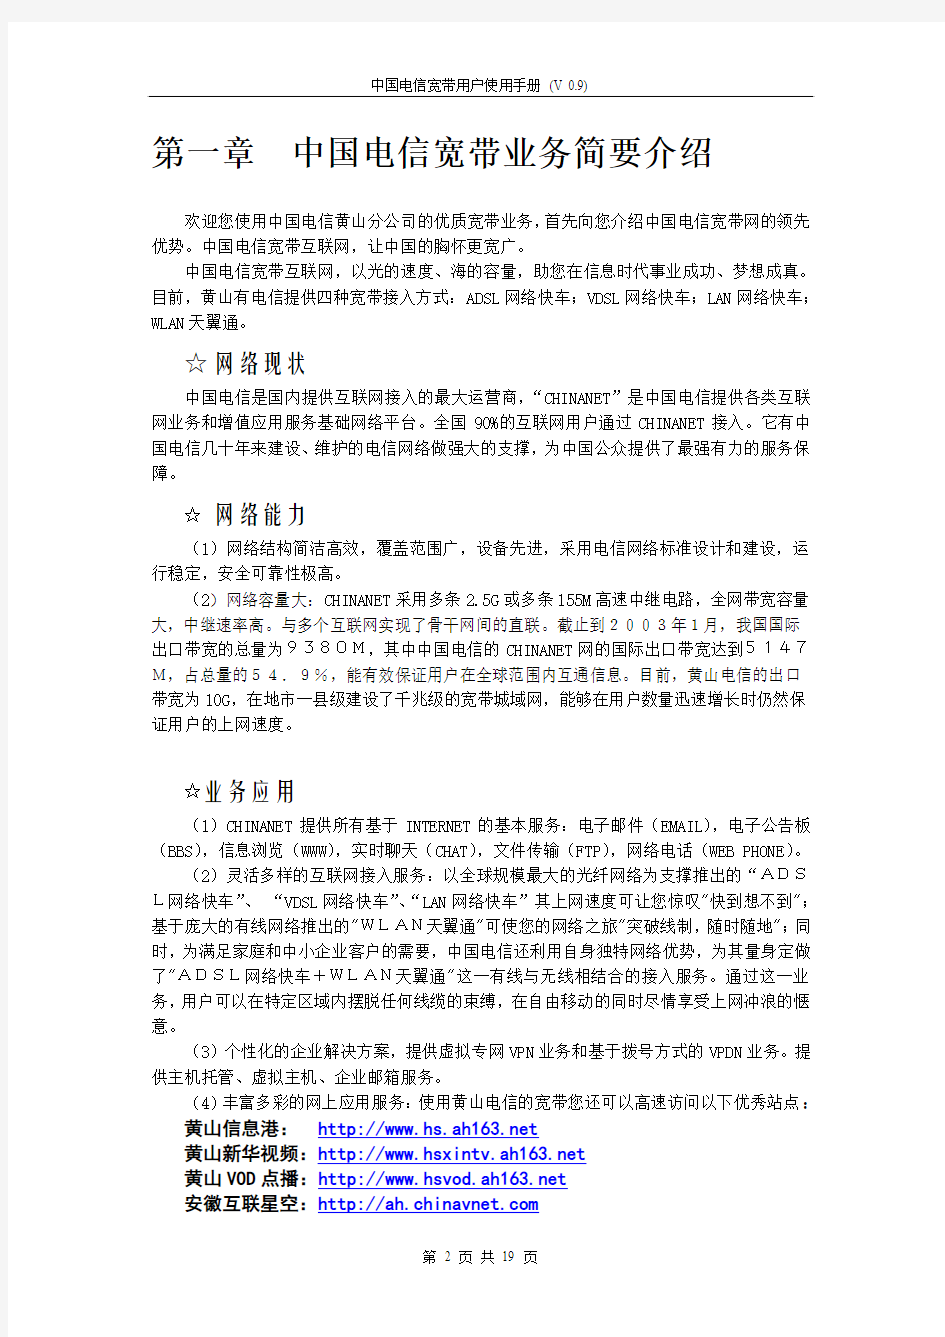 中国电信宽带用户使用手册(v0.9)